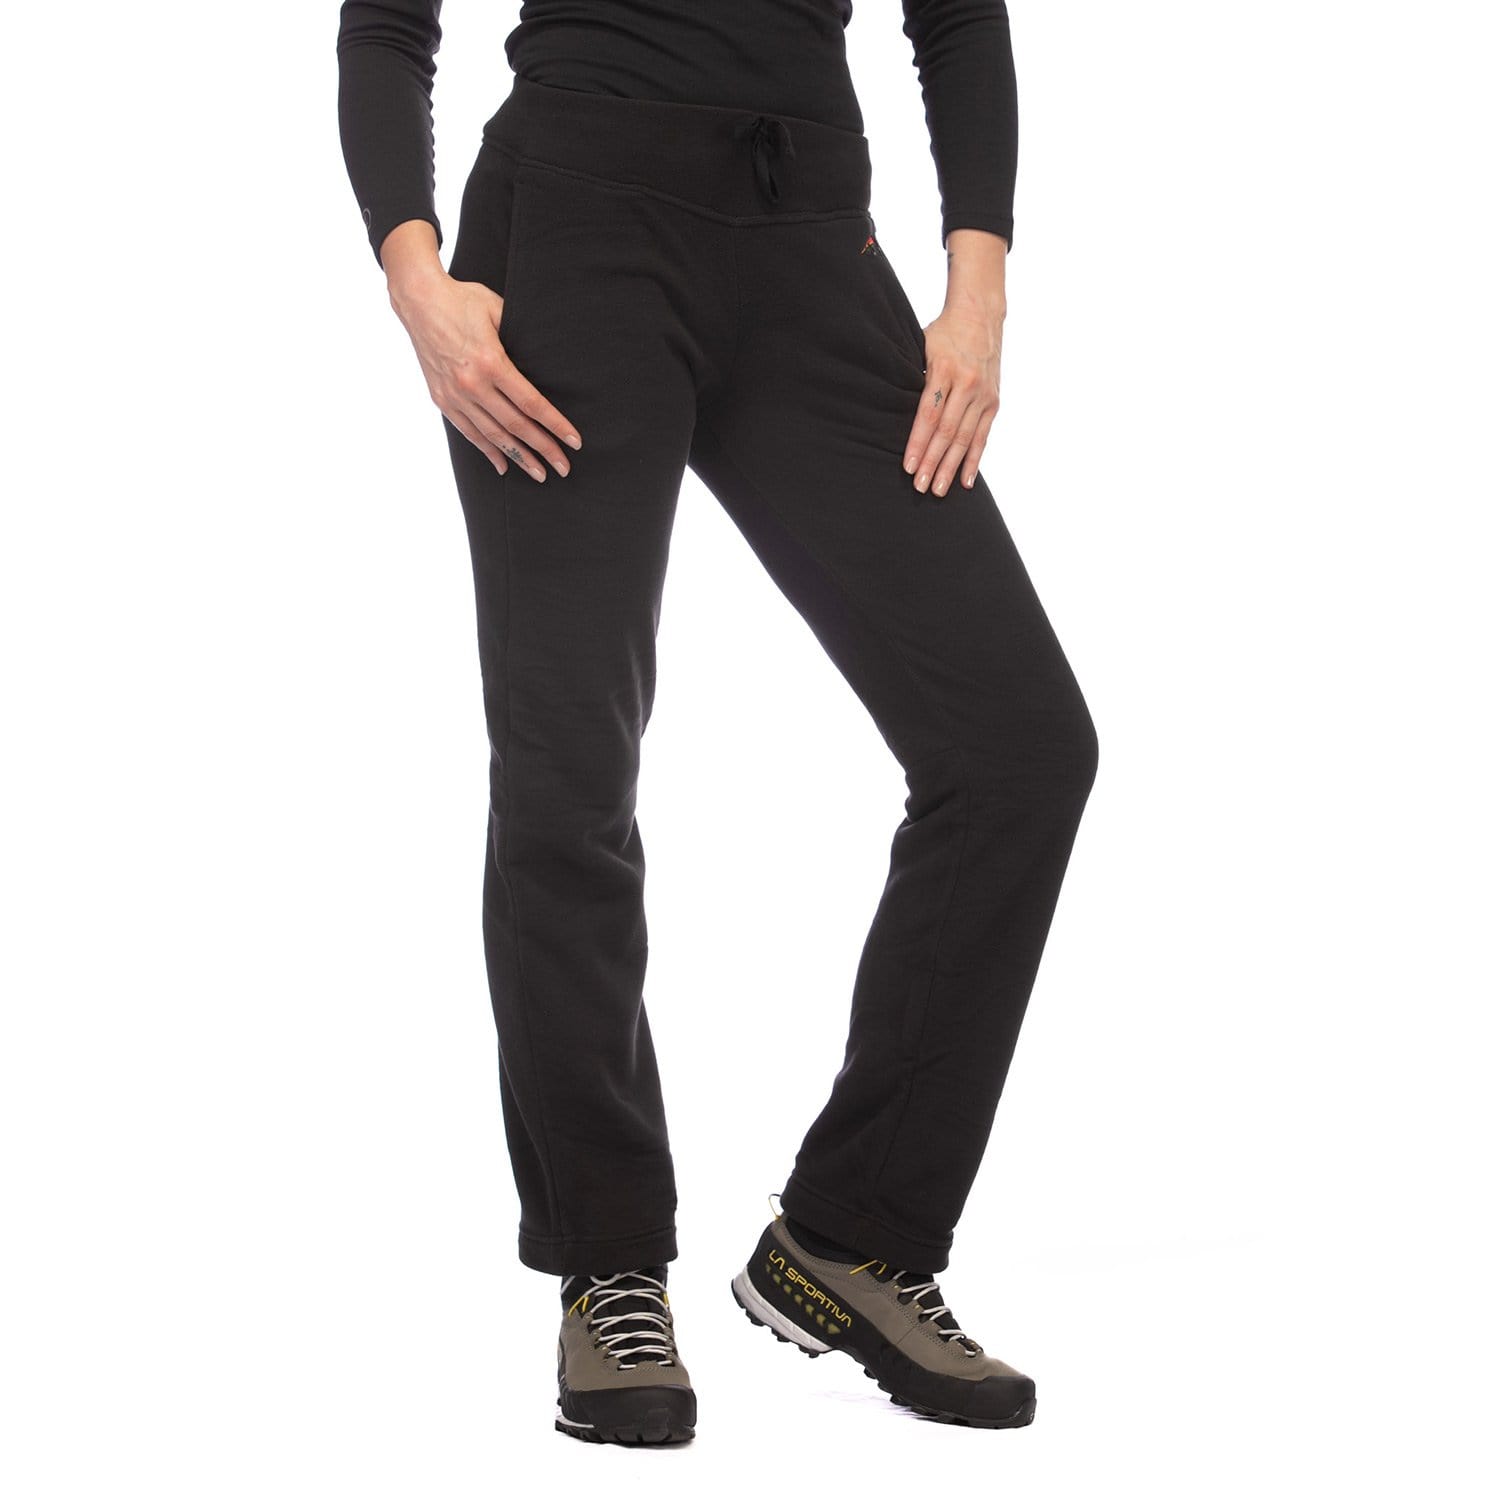 Buy Karen Scott women sport microfleece pants black Online | Brands For Less